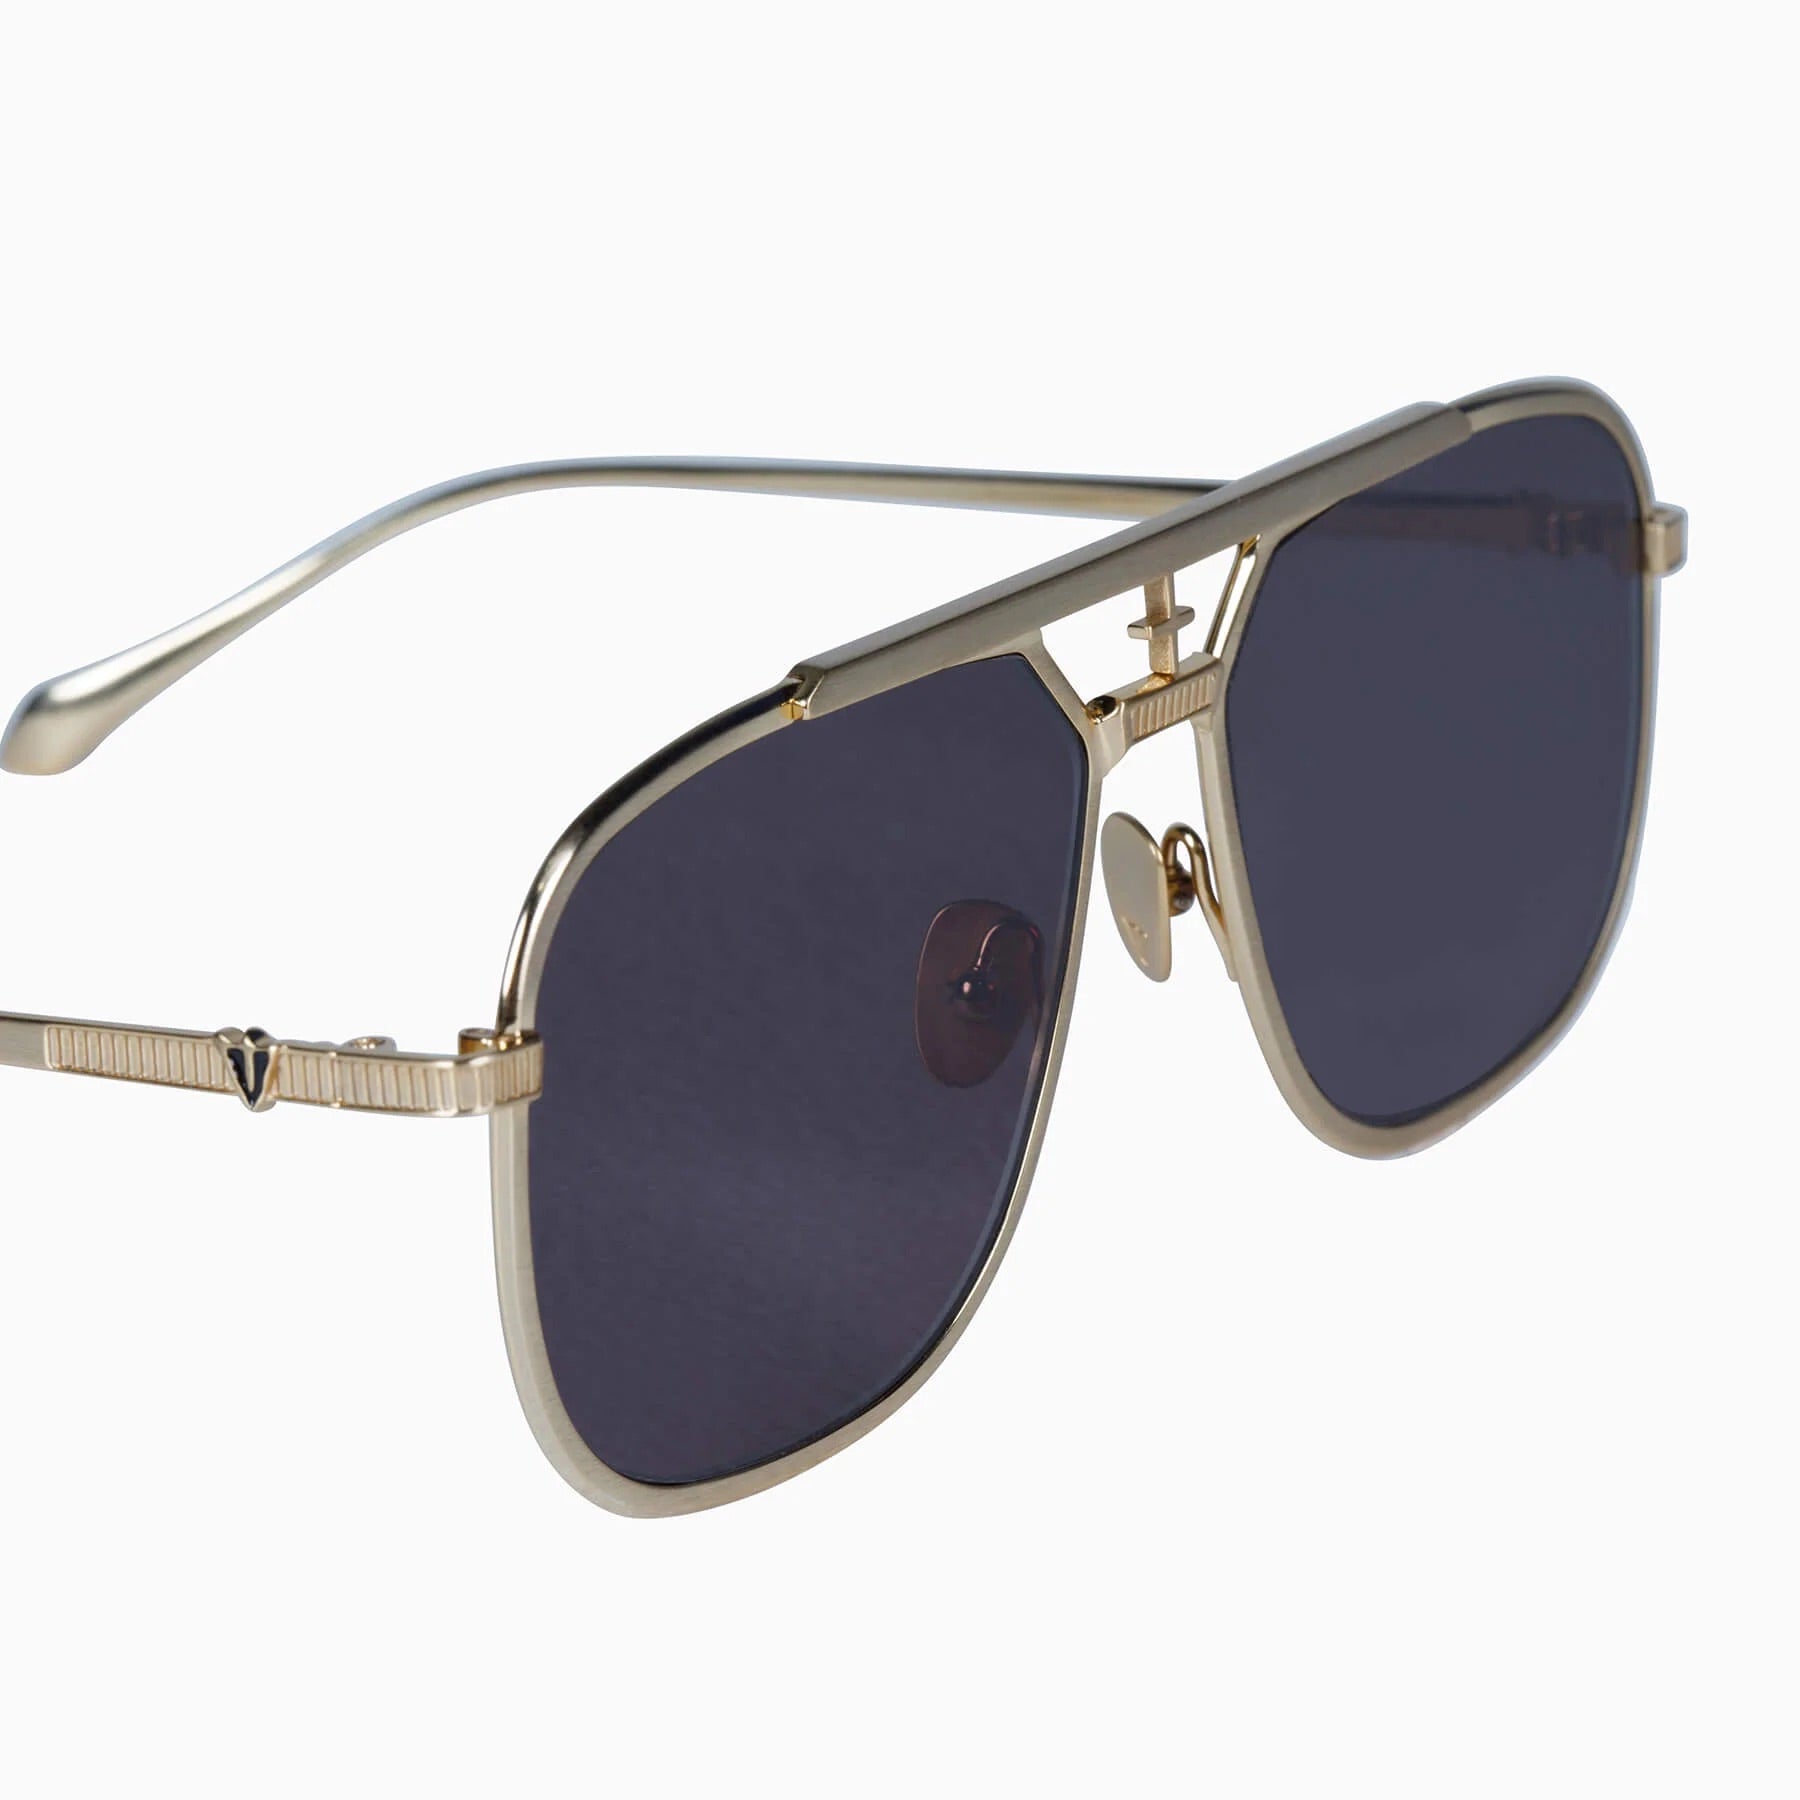 Capita | Sunglasses - Brushed Gold Titanium / Black Lens